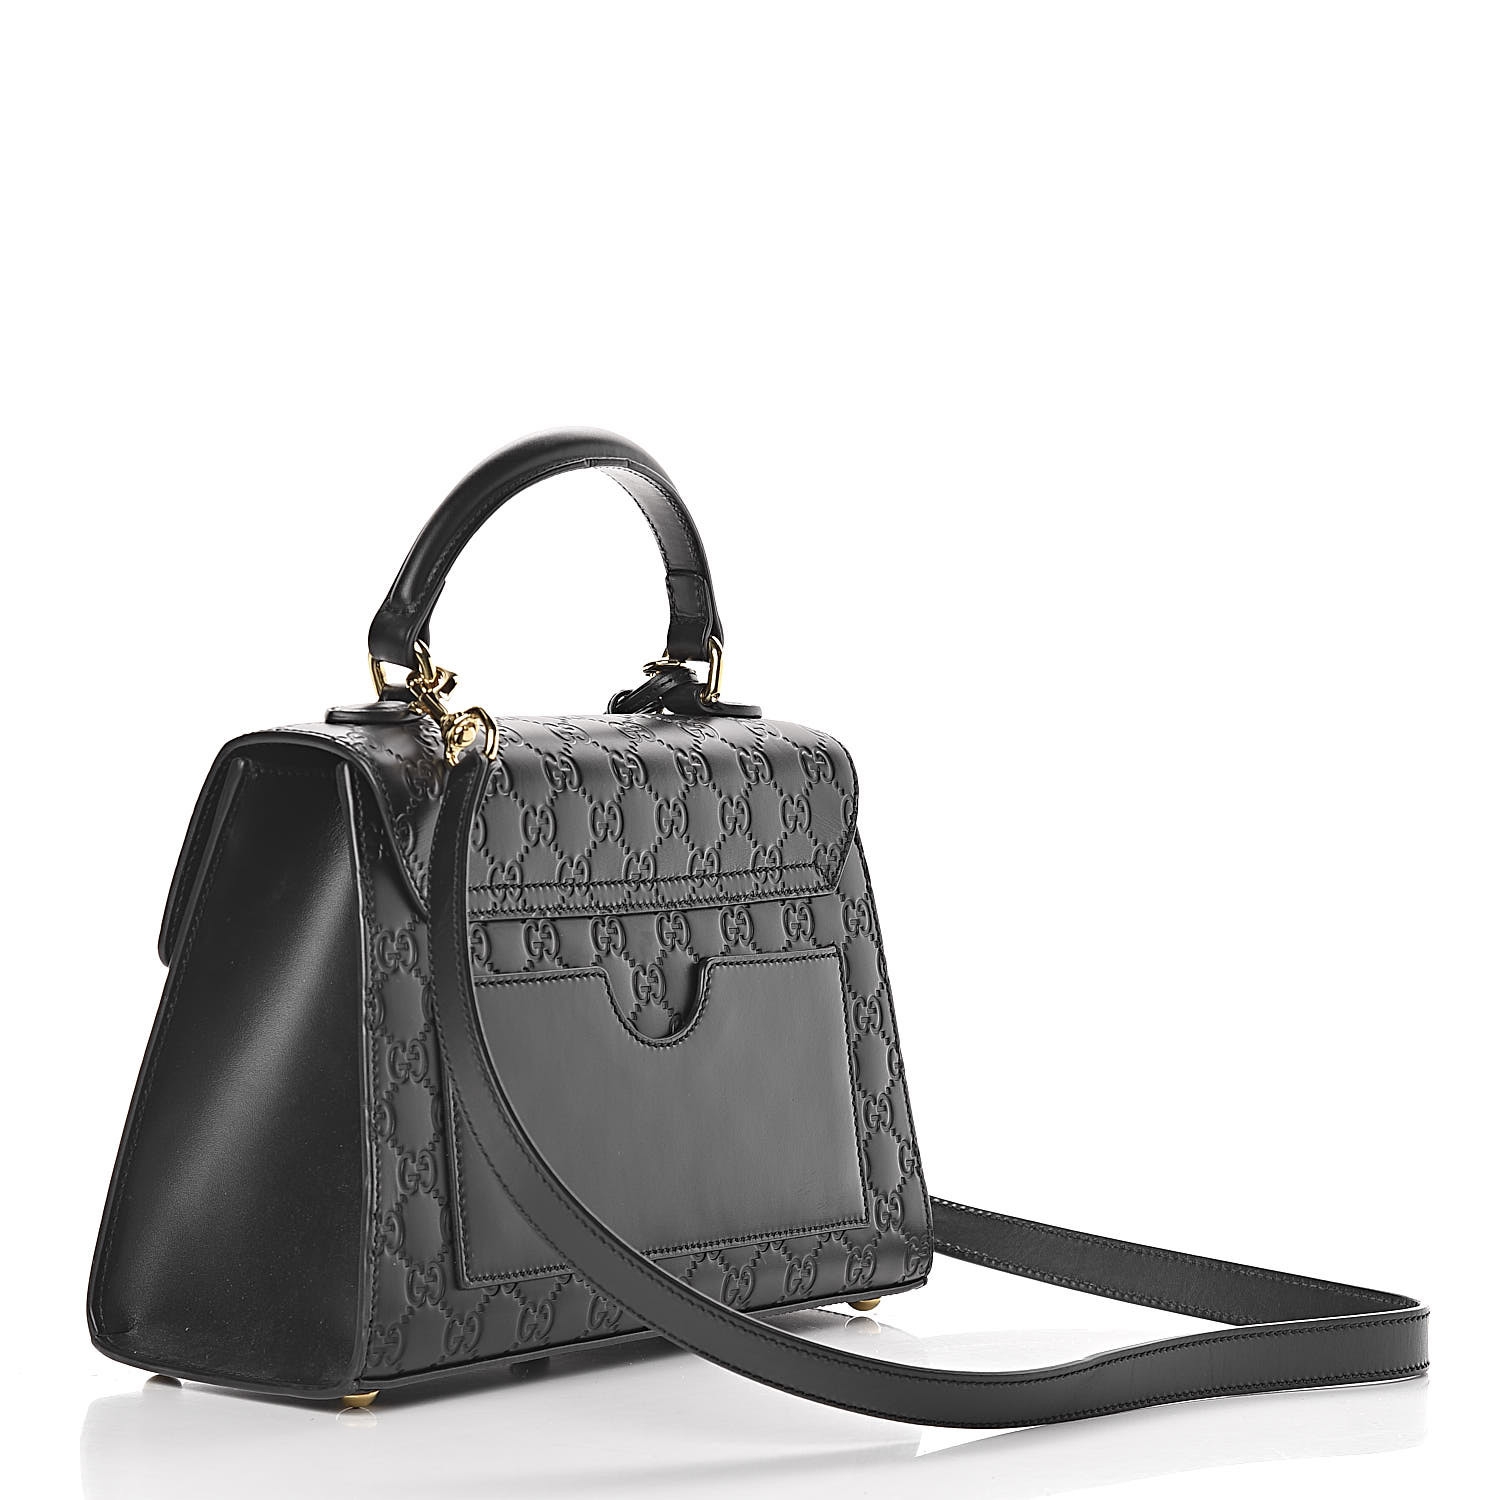 GUCCI Guccissima Small Padlock Signature Top Handle Bag Black 457330